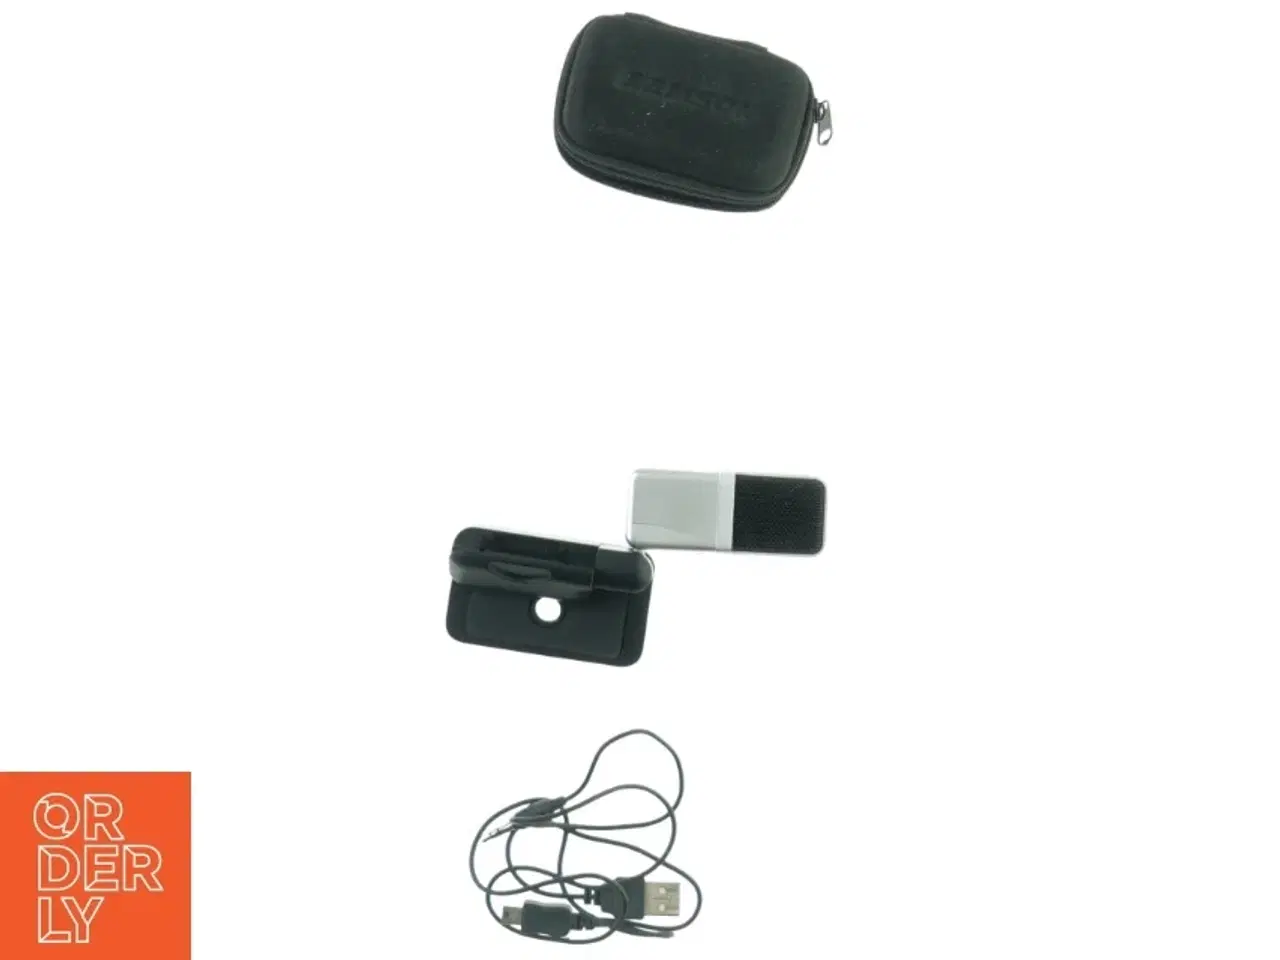 Billede 2 - Go Mic USB Mikrofon fra Samson (str. 8 x 5 cm)